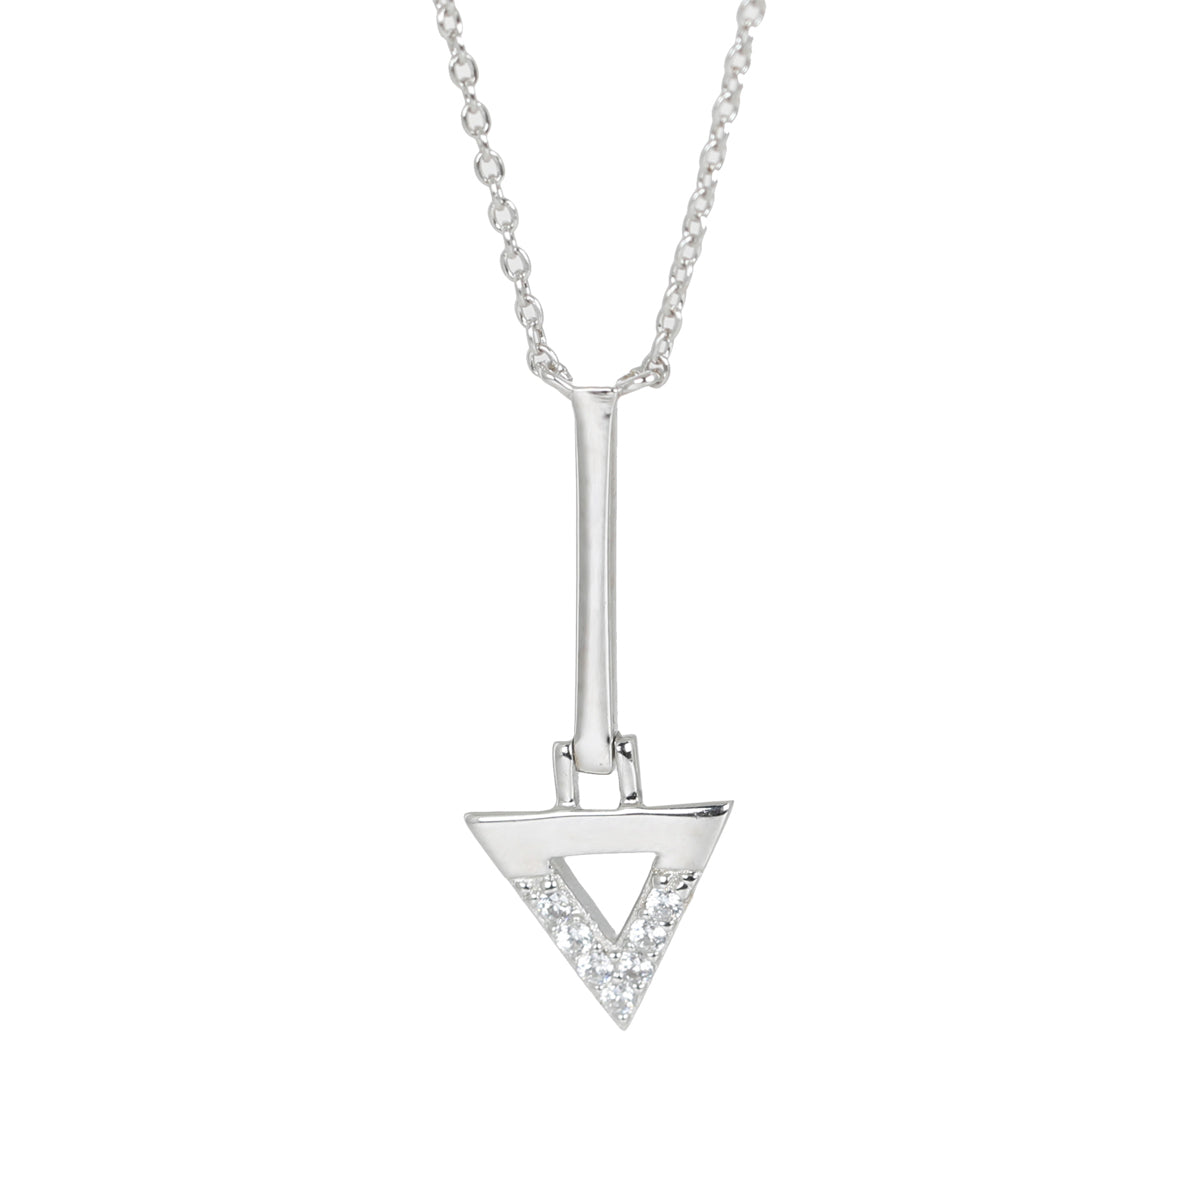 Silver Bermuda bar necklace